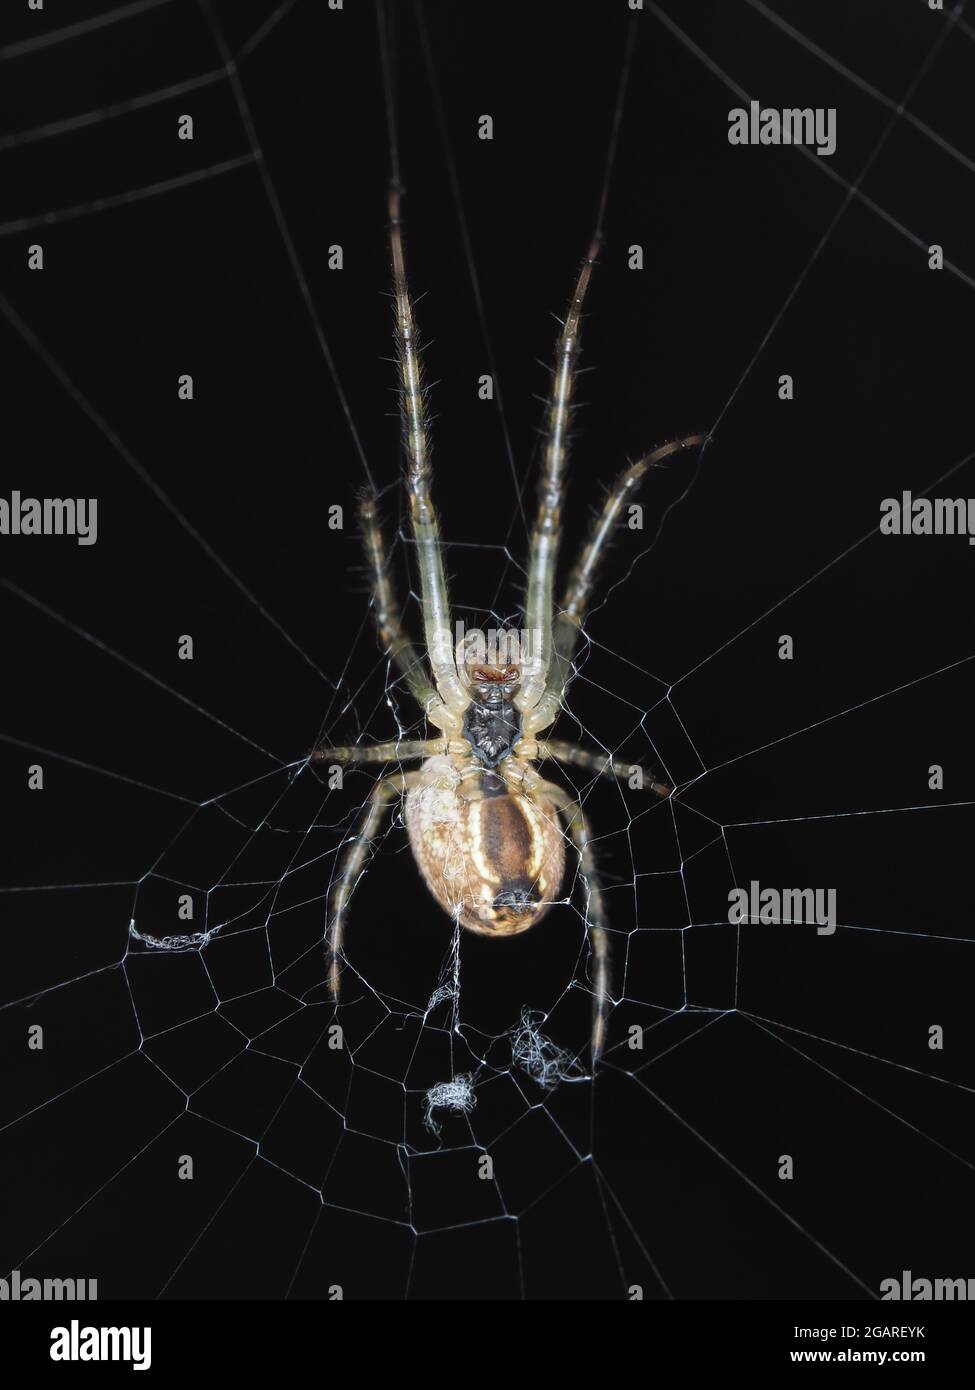 Spider identifiziert als Araneus diadematus, ventrale Ansicht - Makrofotografie Stockfoto